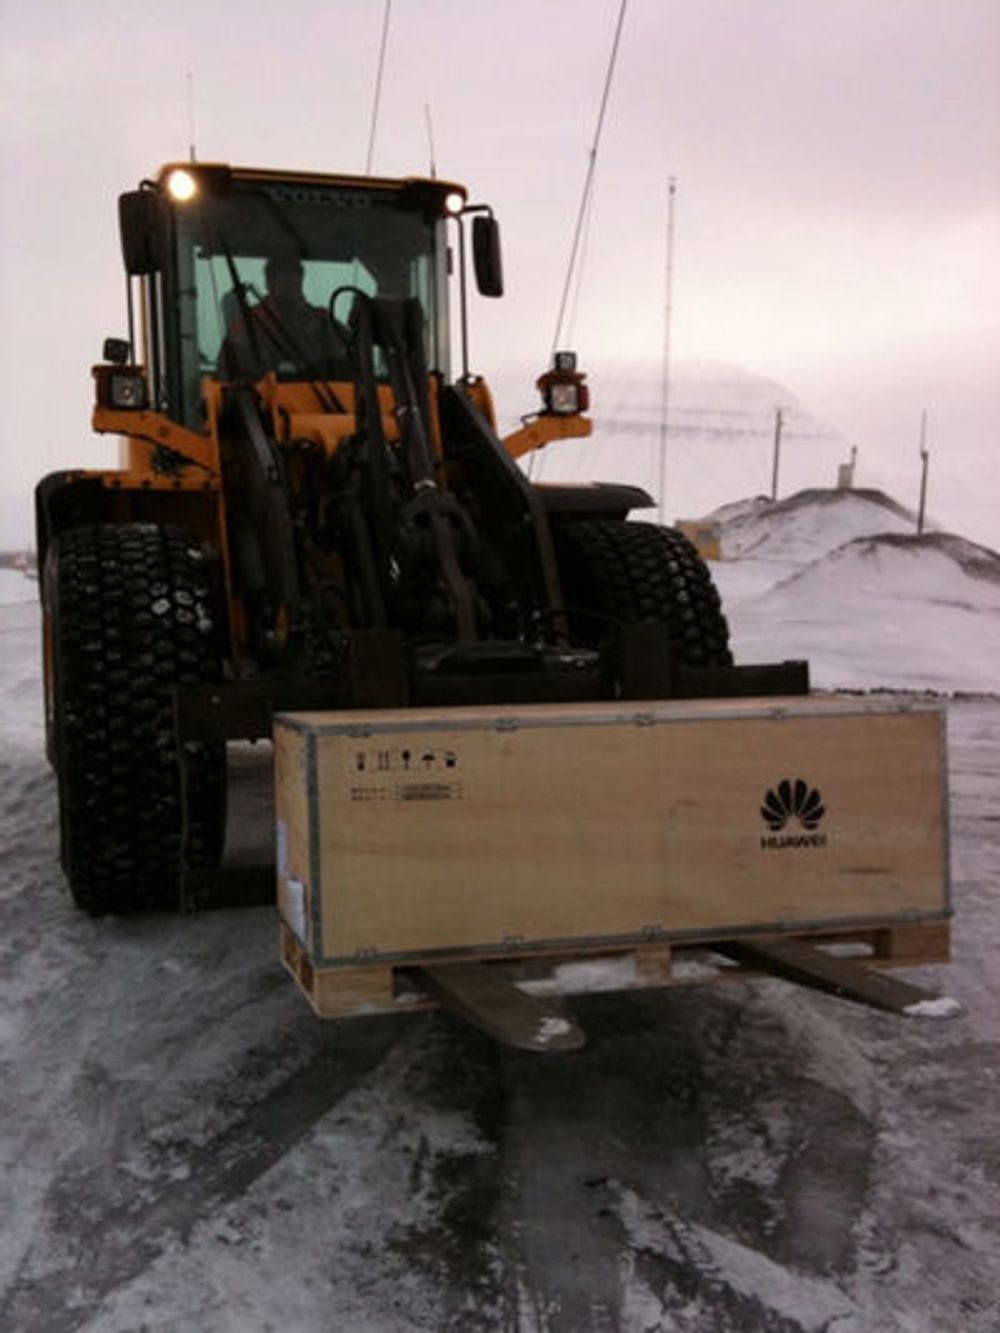 Svalbard: Her losses utstyr til Telenors mobilnett i Longyearbyen. Totalt har Telenor seks ulike mobilbasestasjoner på Svalbard.